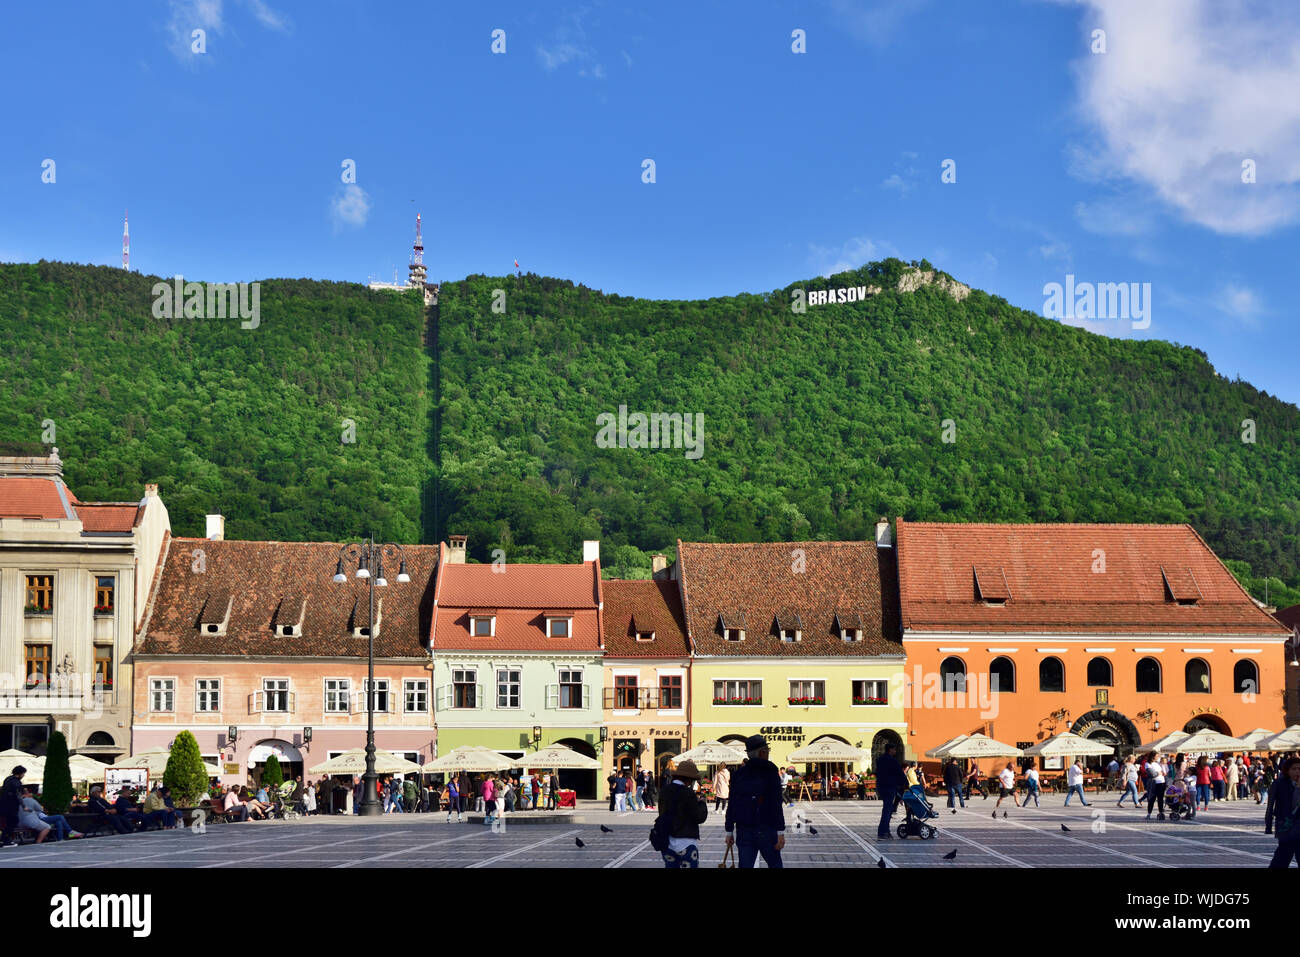 Houses in Piata Sfatului (Council Square) and Tampa mountain. Brasov, Transylvania. Romania Stock Photo